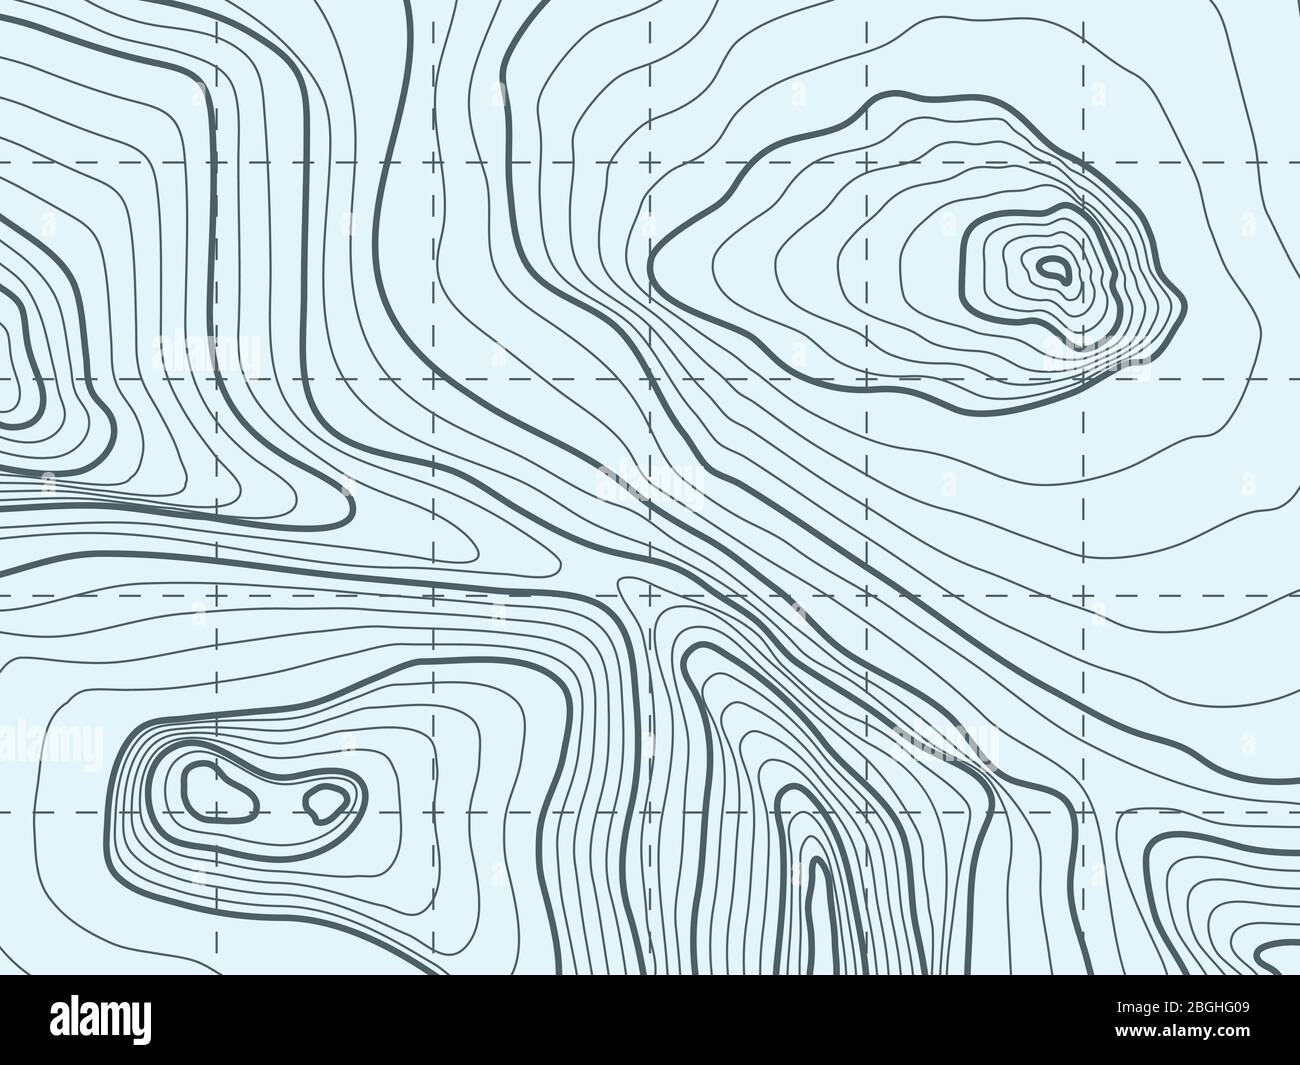 Contorno topografico, mappa vettoriale a linee con montagna. Illustrazione del rilievo topografico e cartografico geografico del terreno Illustrazione Vettoriale